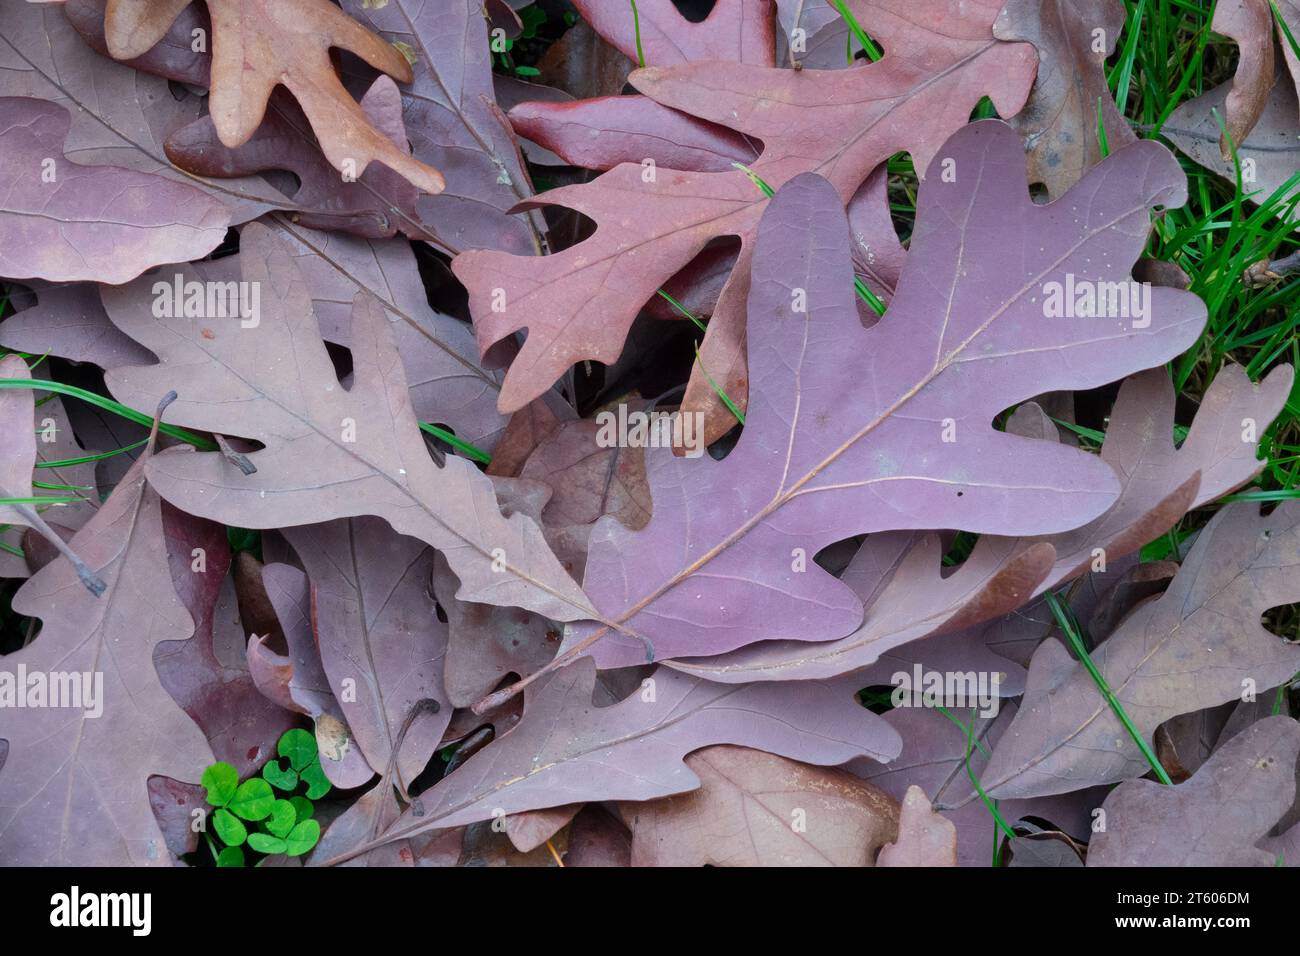 White Oak, Quercus alba, leaves on ground Stock Photo